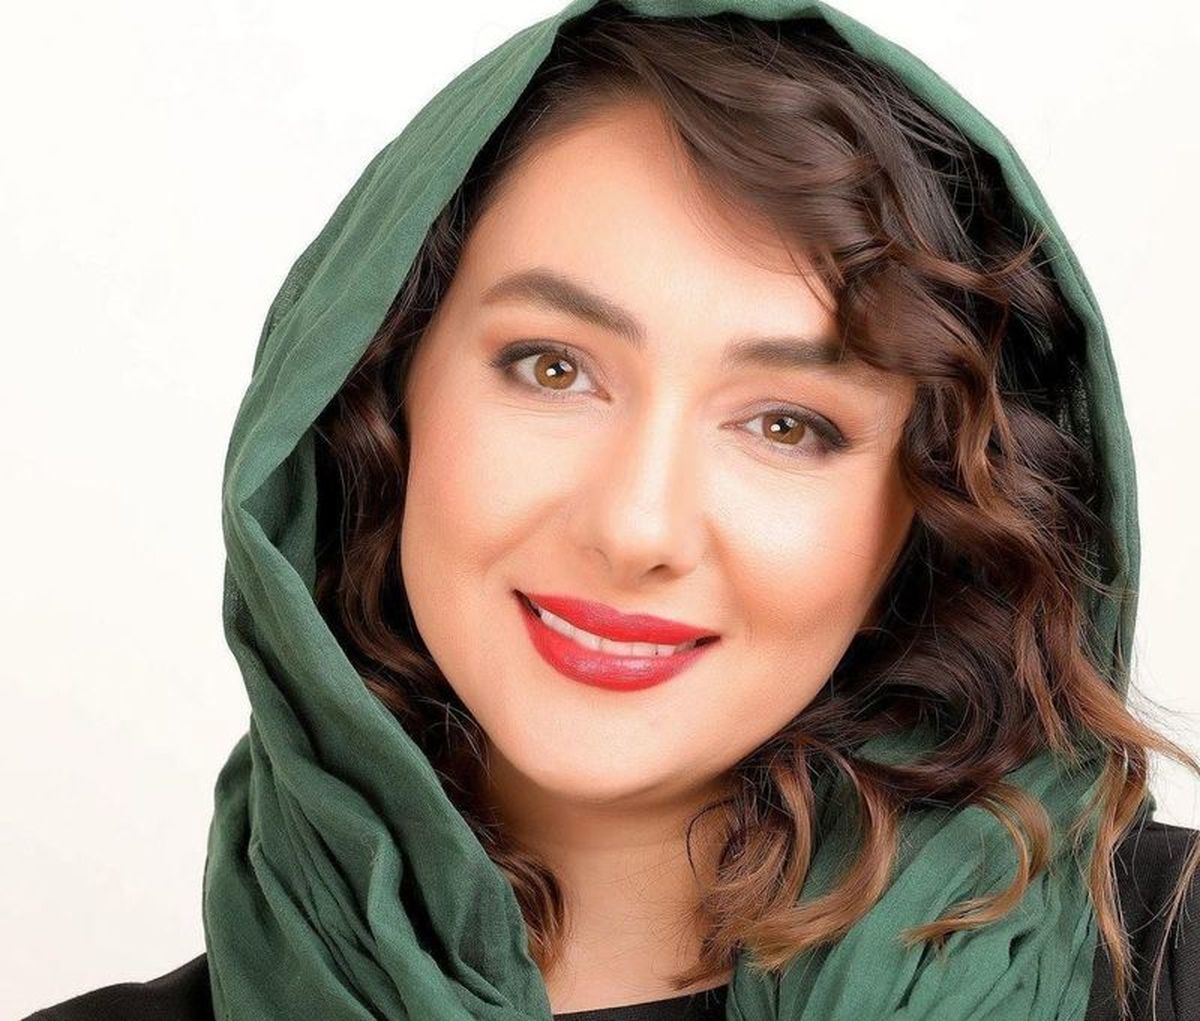 هانیه توسلی: در بدو ورود به سینما مورد تعرض قرار گرفتم/ هدف جنبش ما امن کردن فضای سینماست